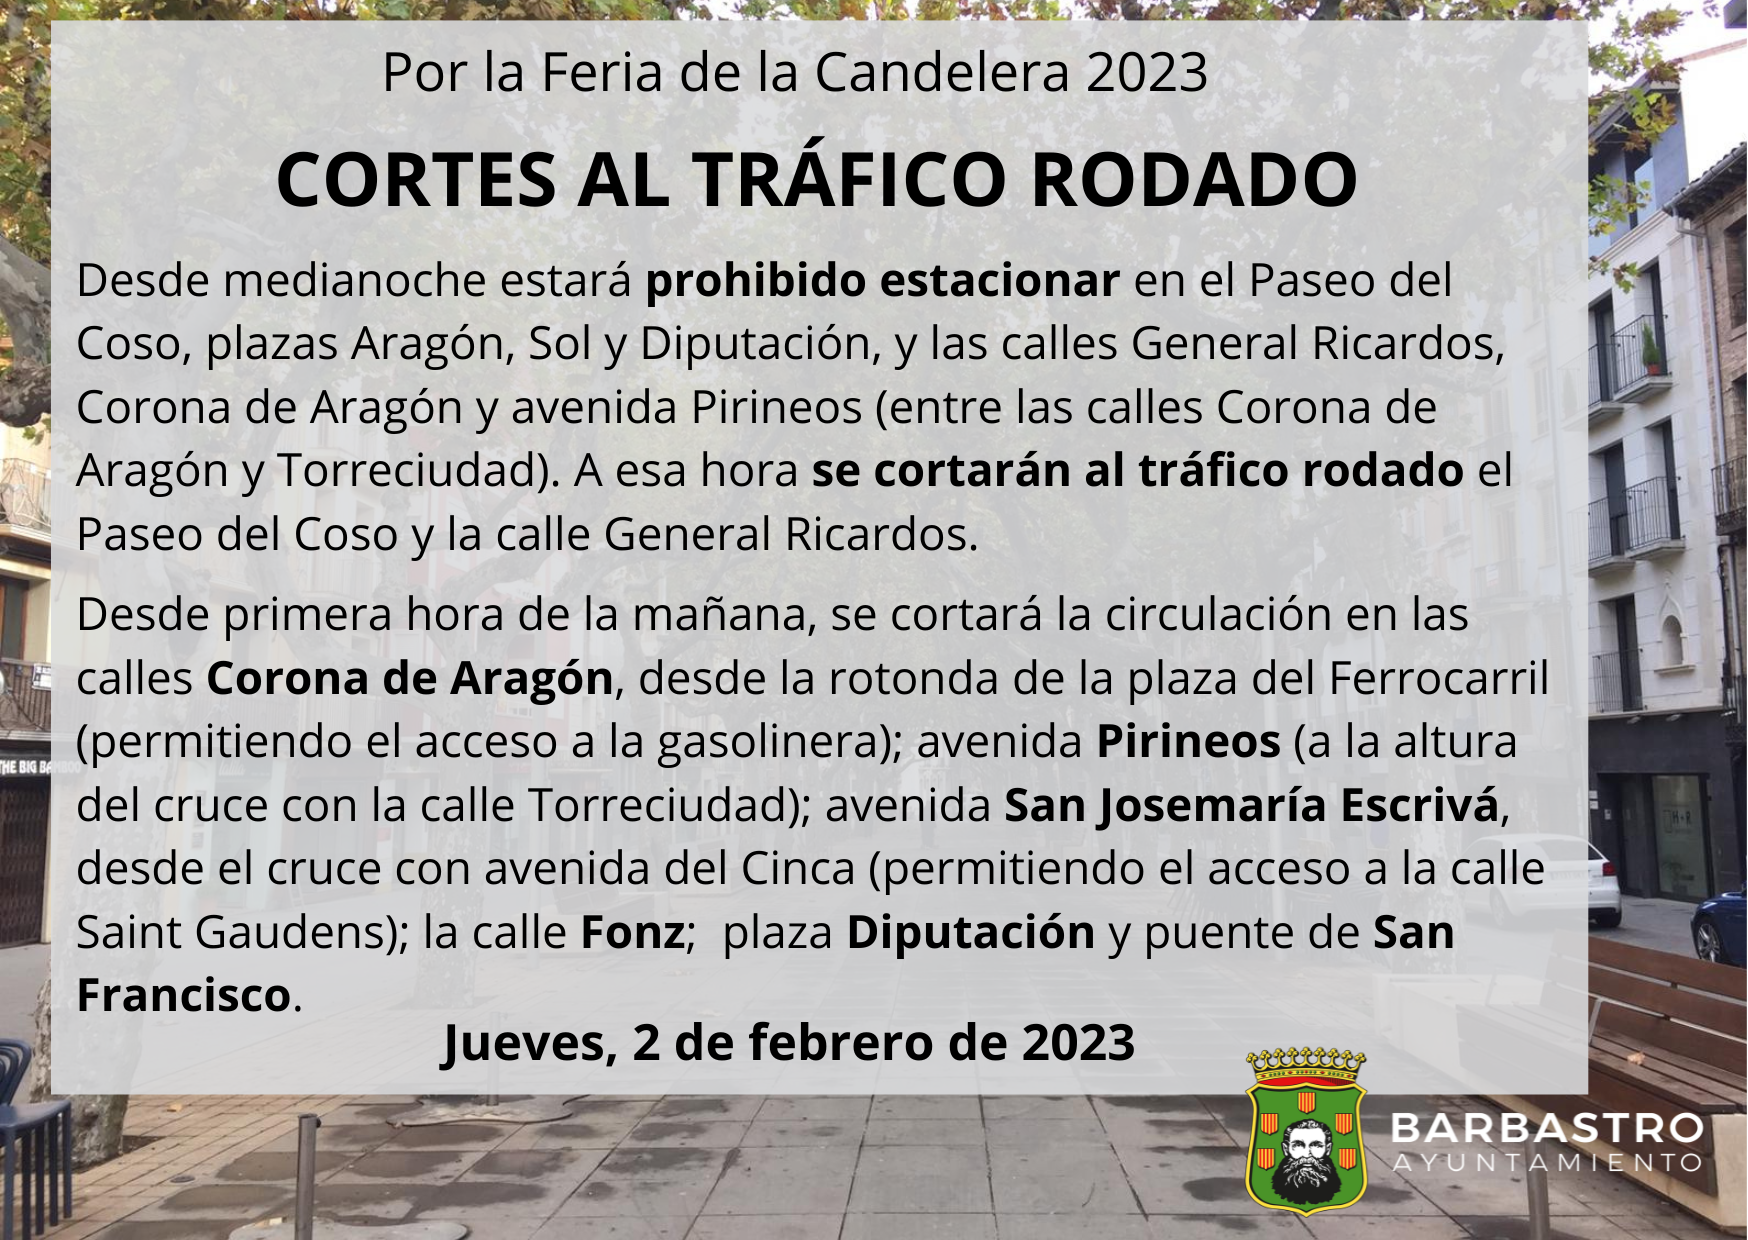 Cortes de calles Candelera 2023